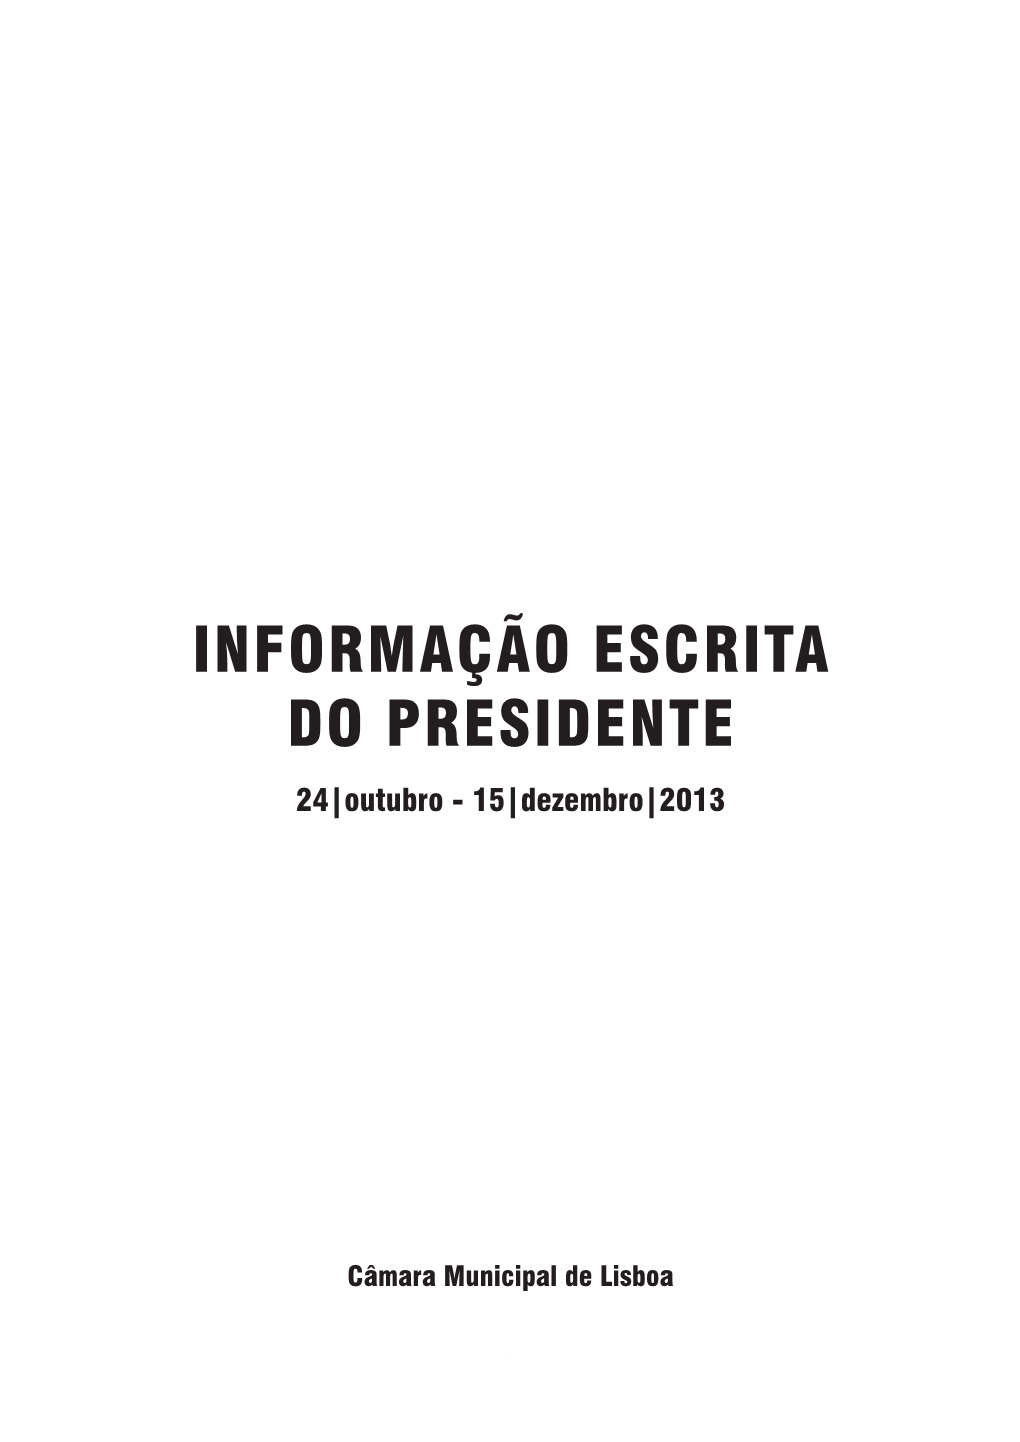 Informação Escrita Do Presidente Da Câmara Municipal De Lisboa 24|Outubro - 15|Dezembro|2013